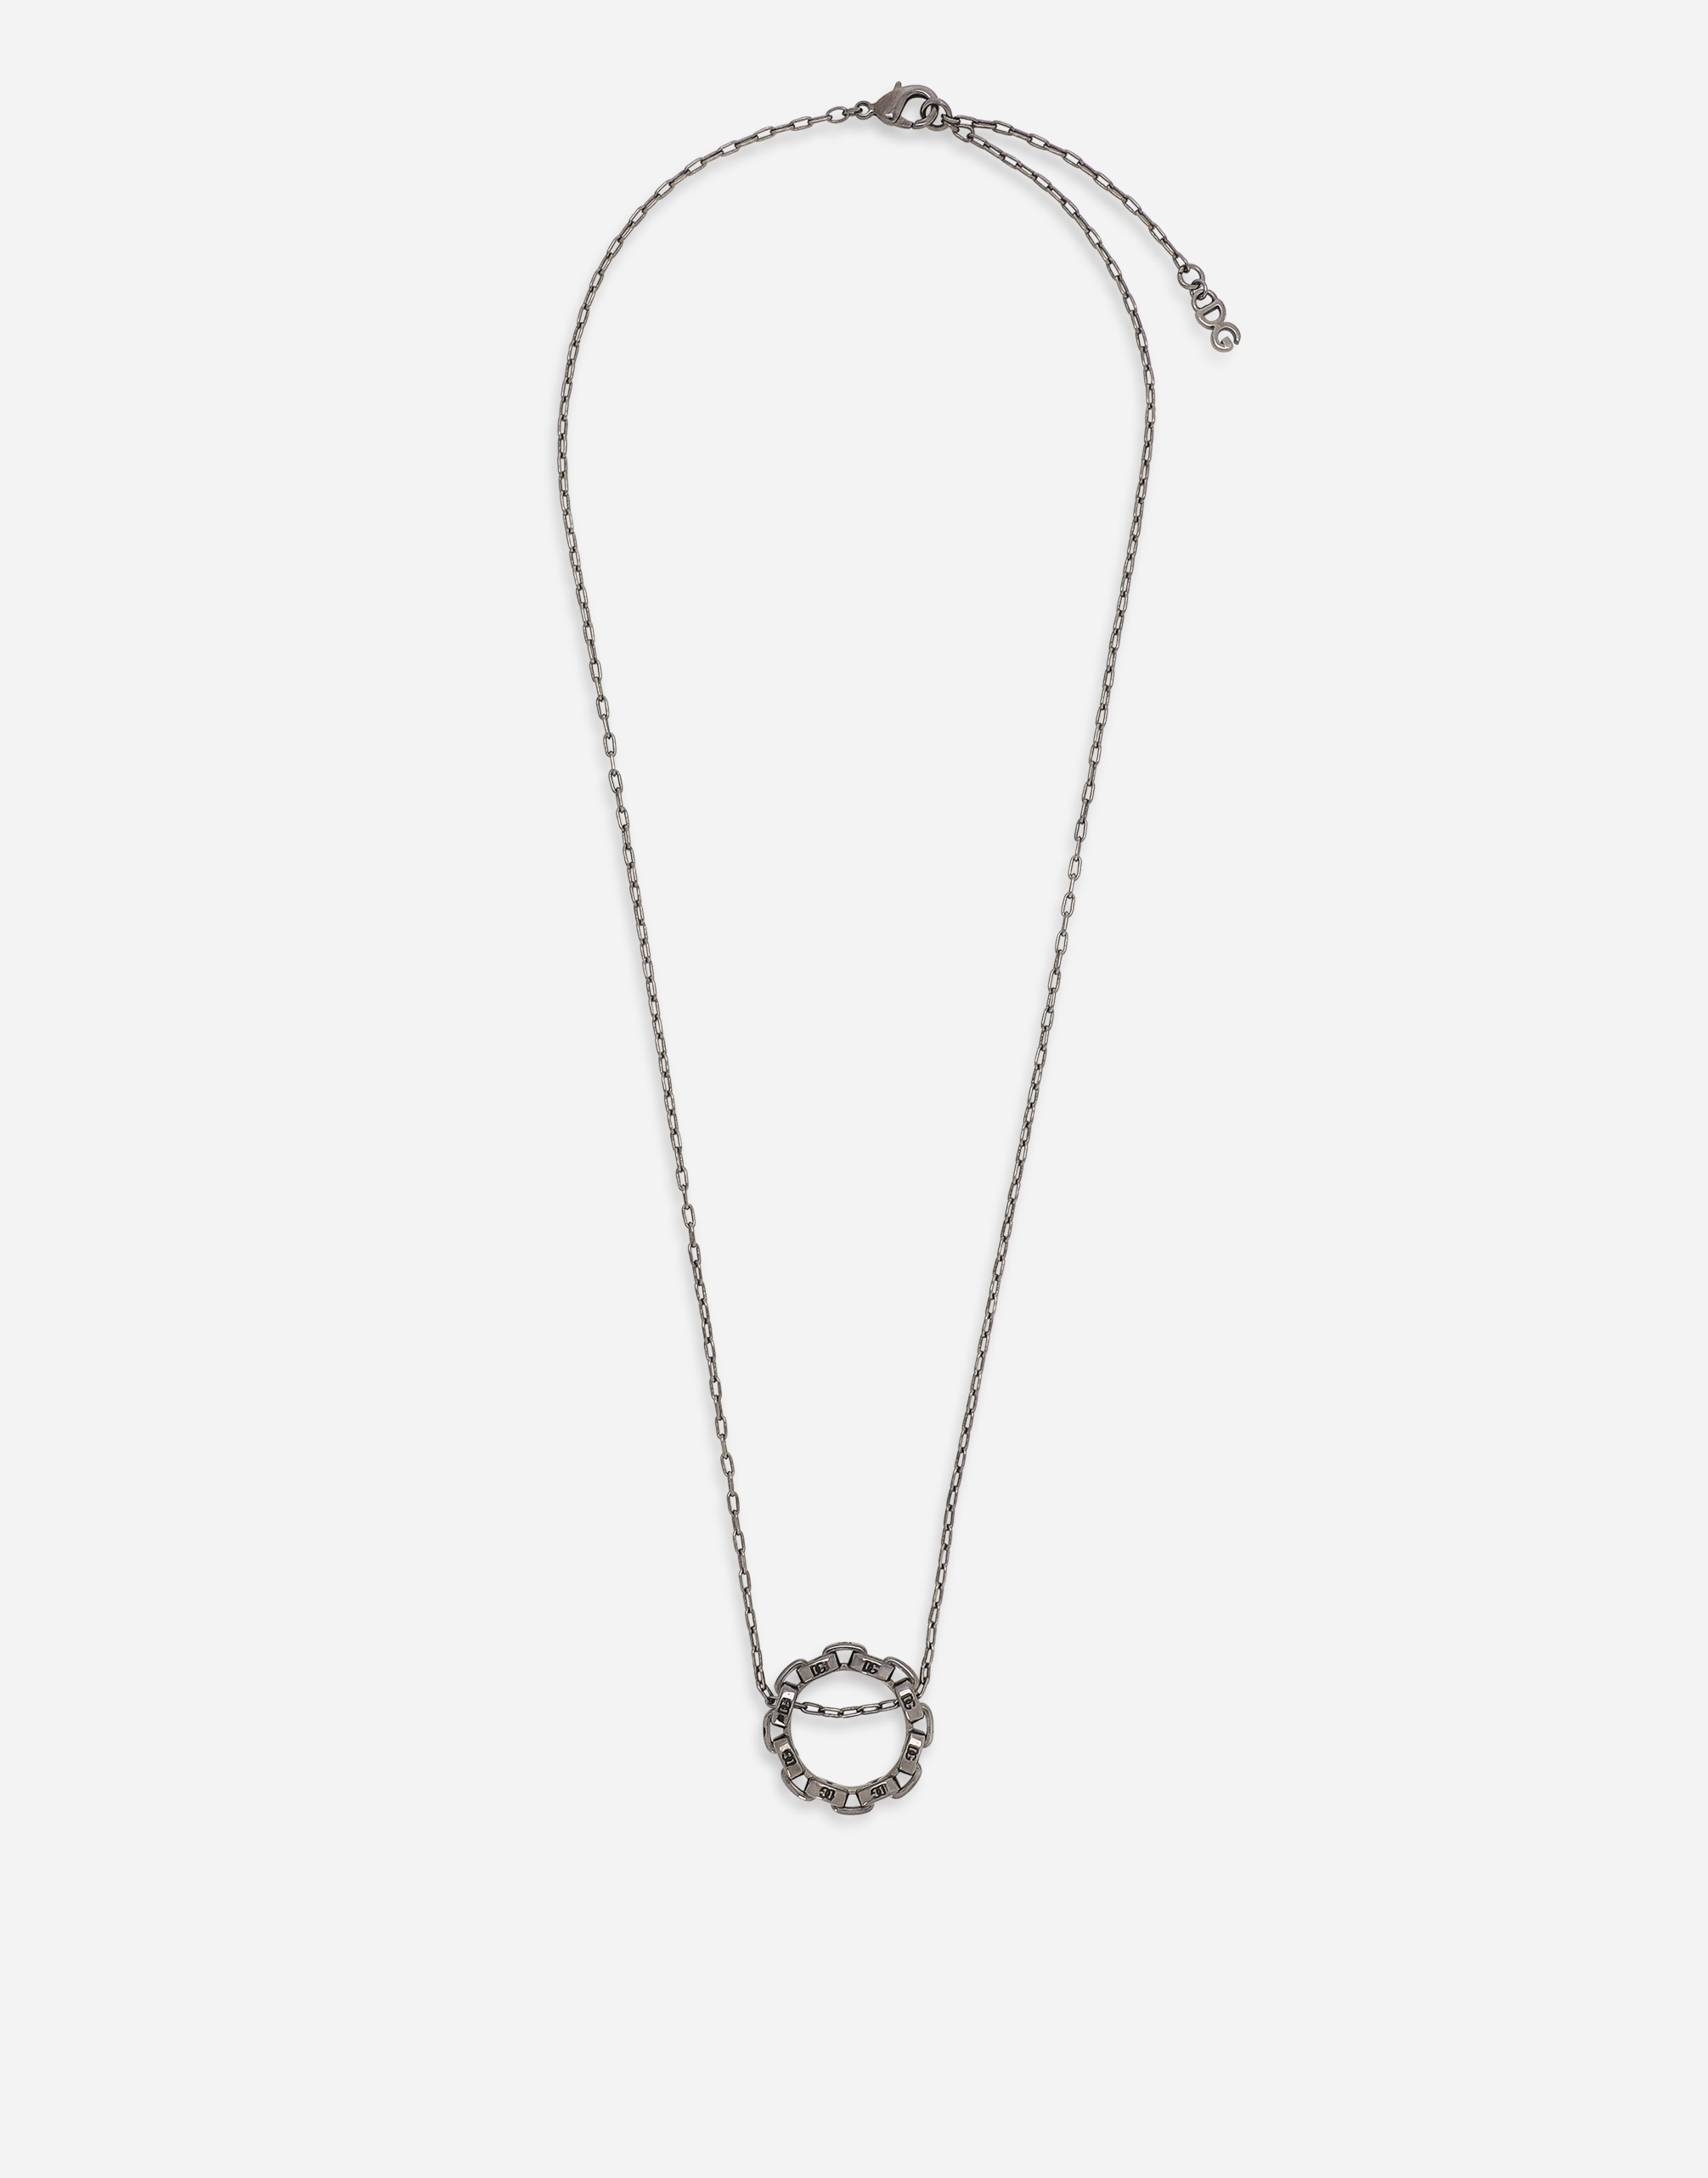 DG-logo necklace in Silver